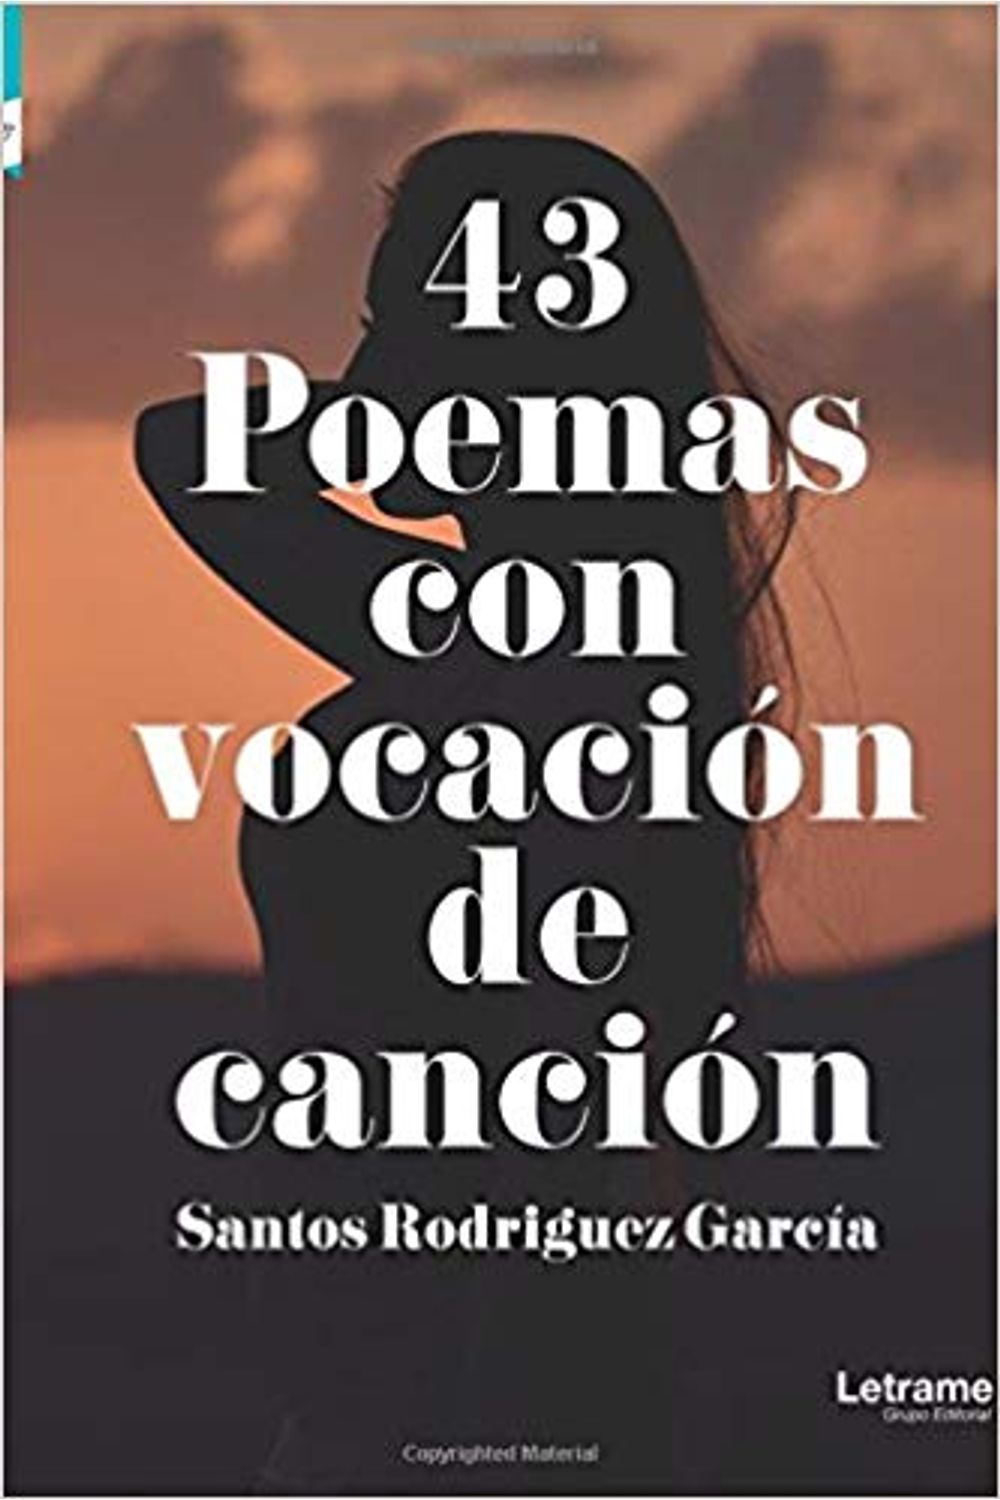 bm-43-poemas-con-vocacion-de-cancion-letrame-9788417396657